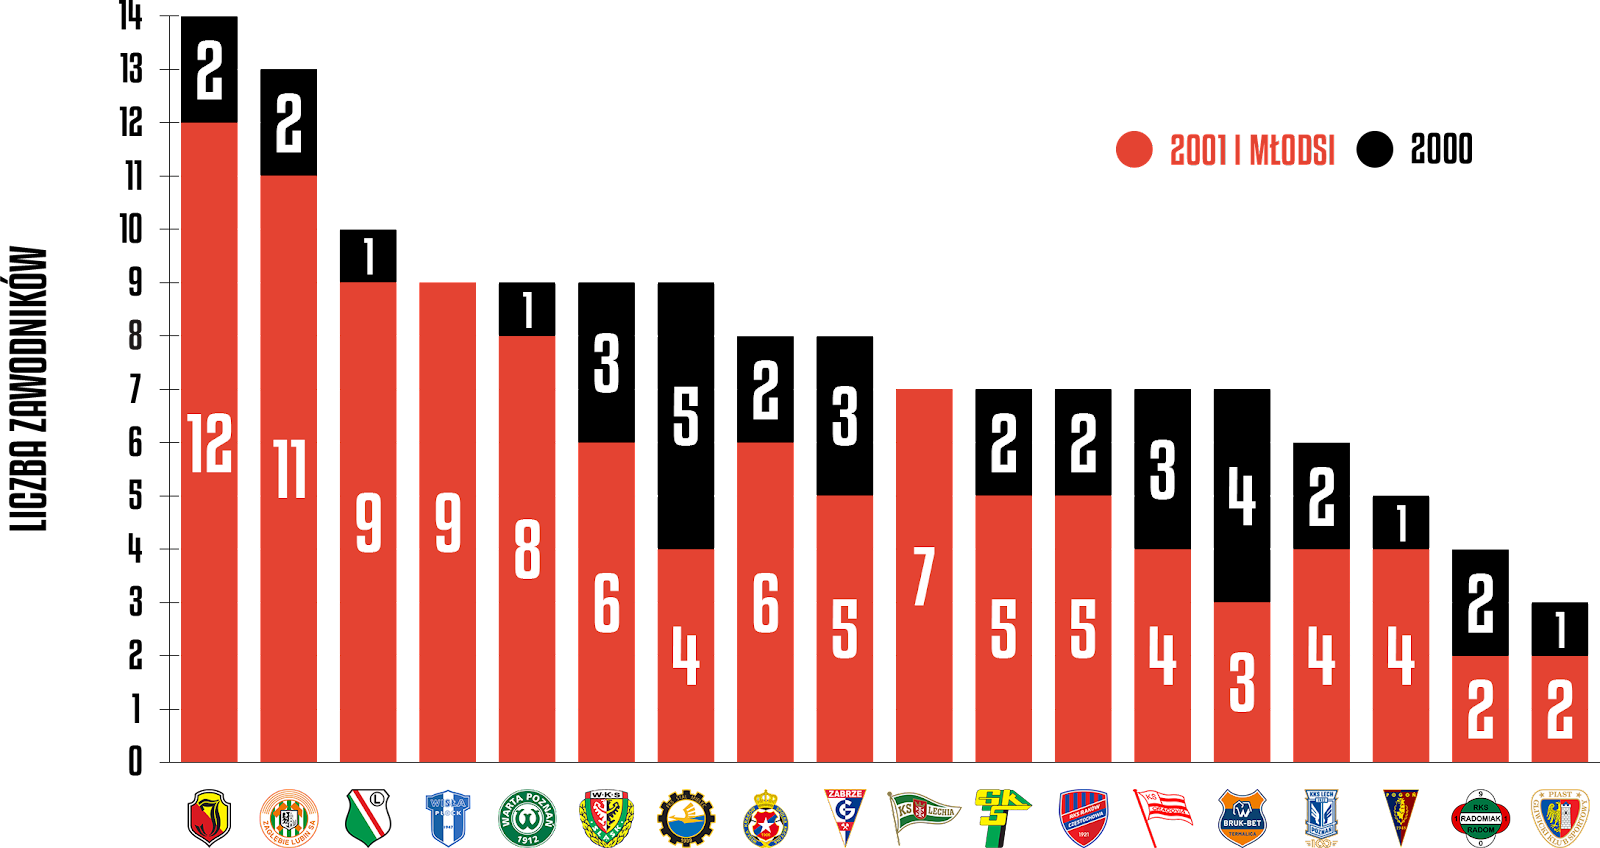 Młodzieżowcy w poszczególnych klubach PKO Ekstraklasy 2021/22<br><br>Źródło: Opracowanie własne na podstawie ekstrastats.pl<br><br>graf. Bartosz Urban